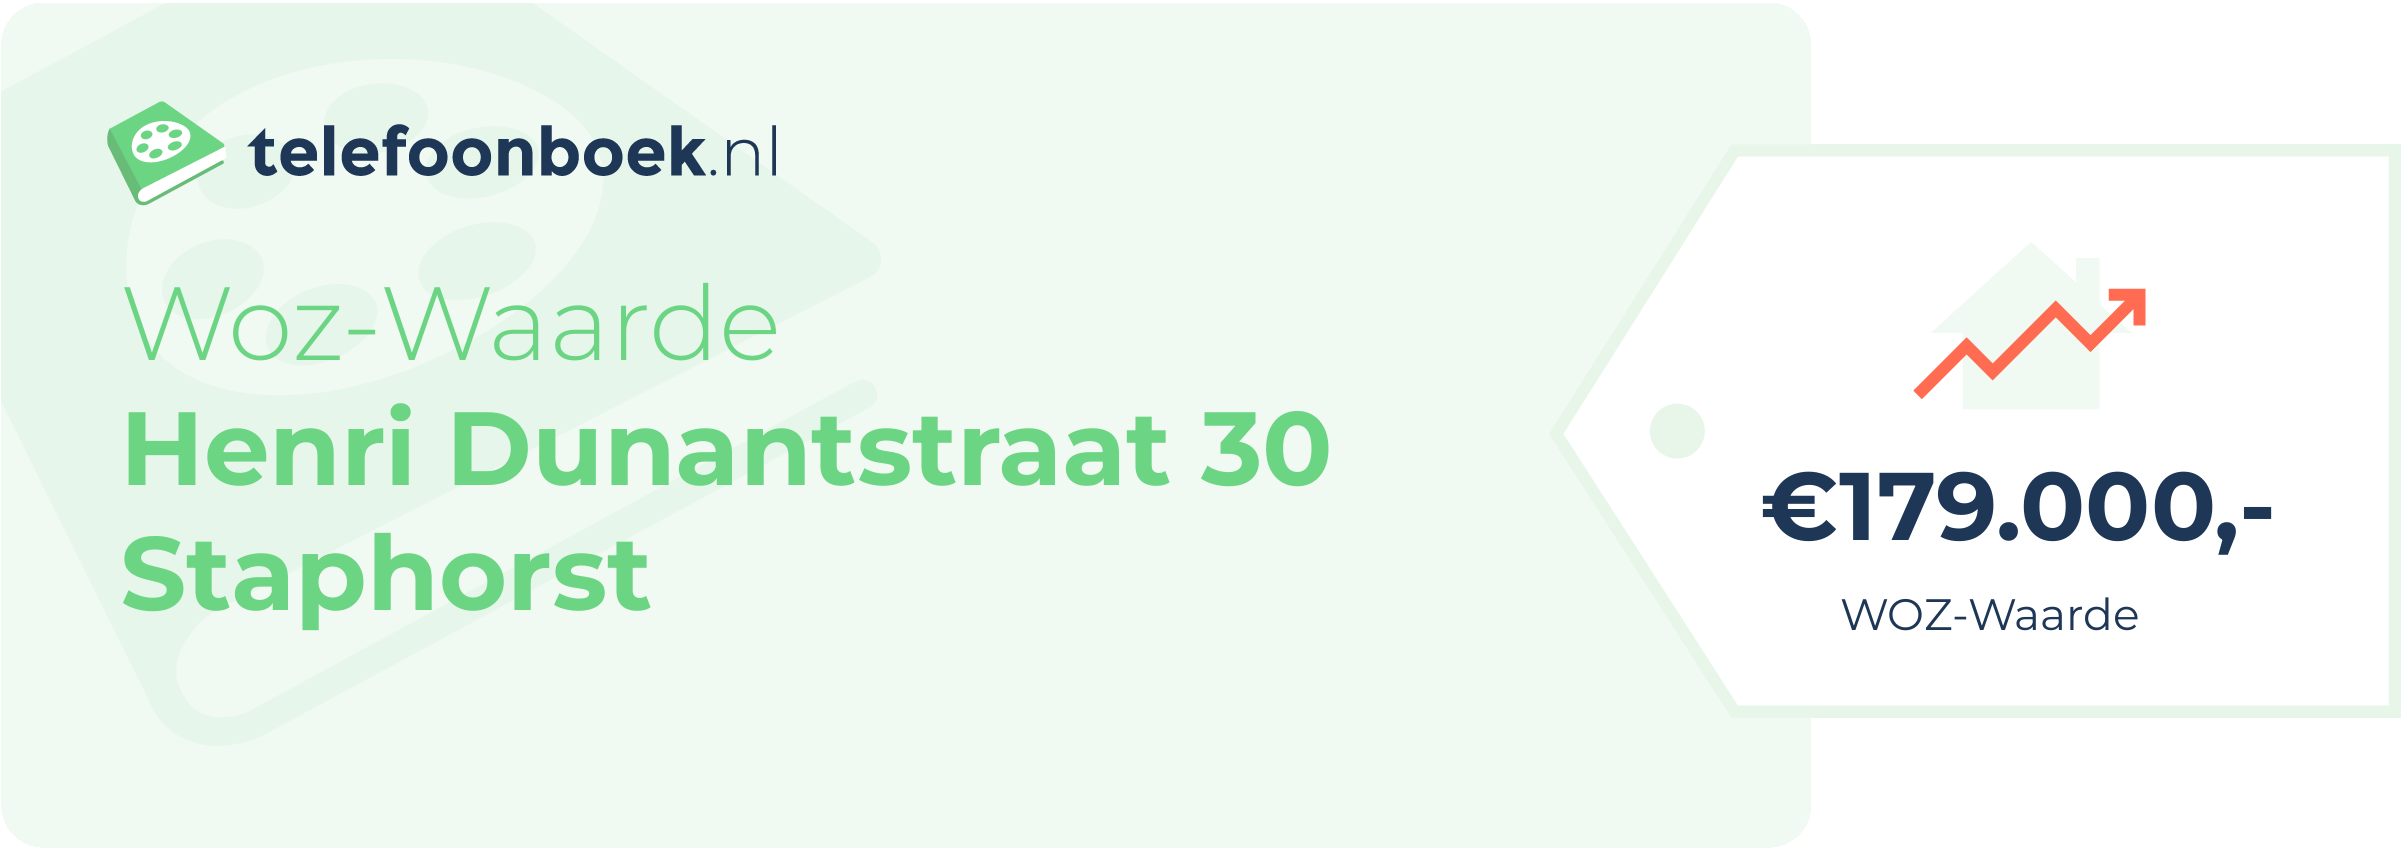 WOZ-waarde Henri Dunantstraat 30 Staphorst